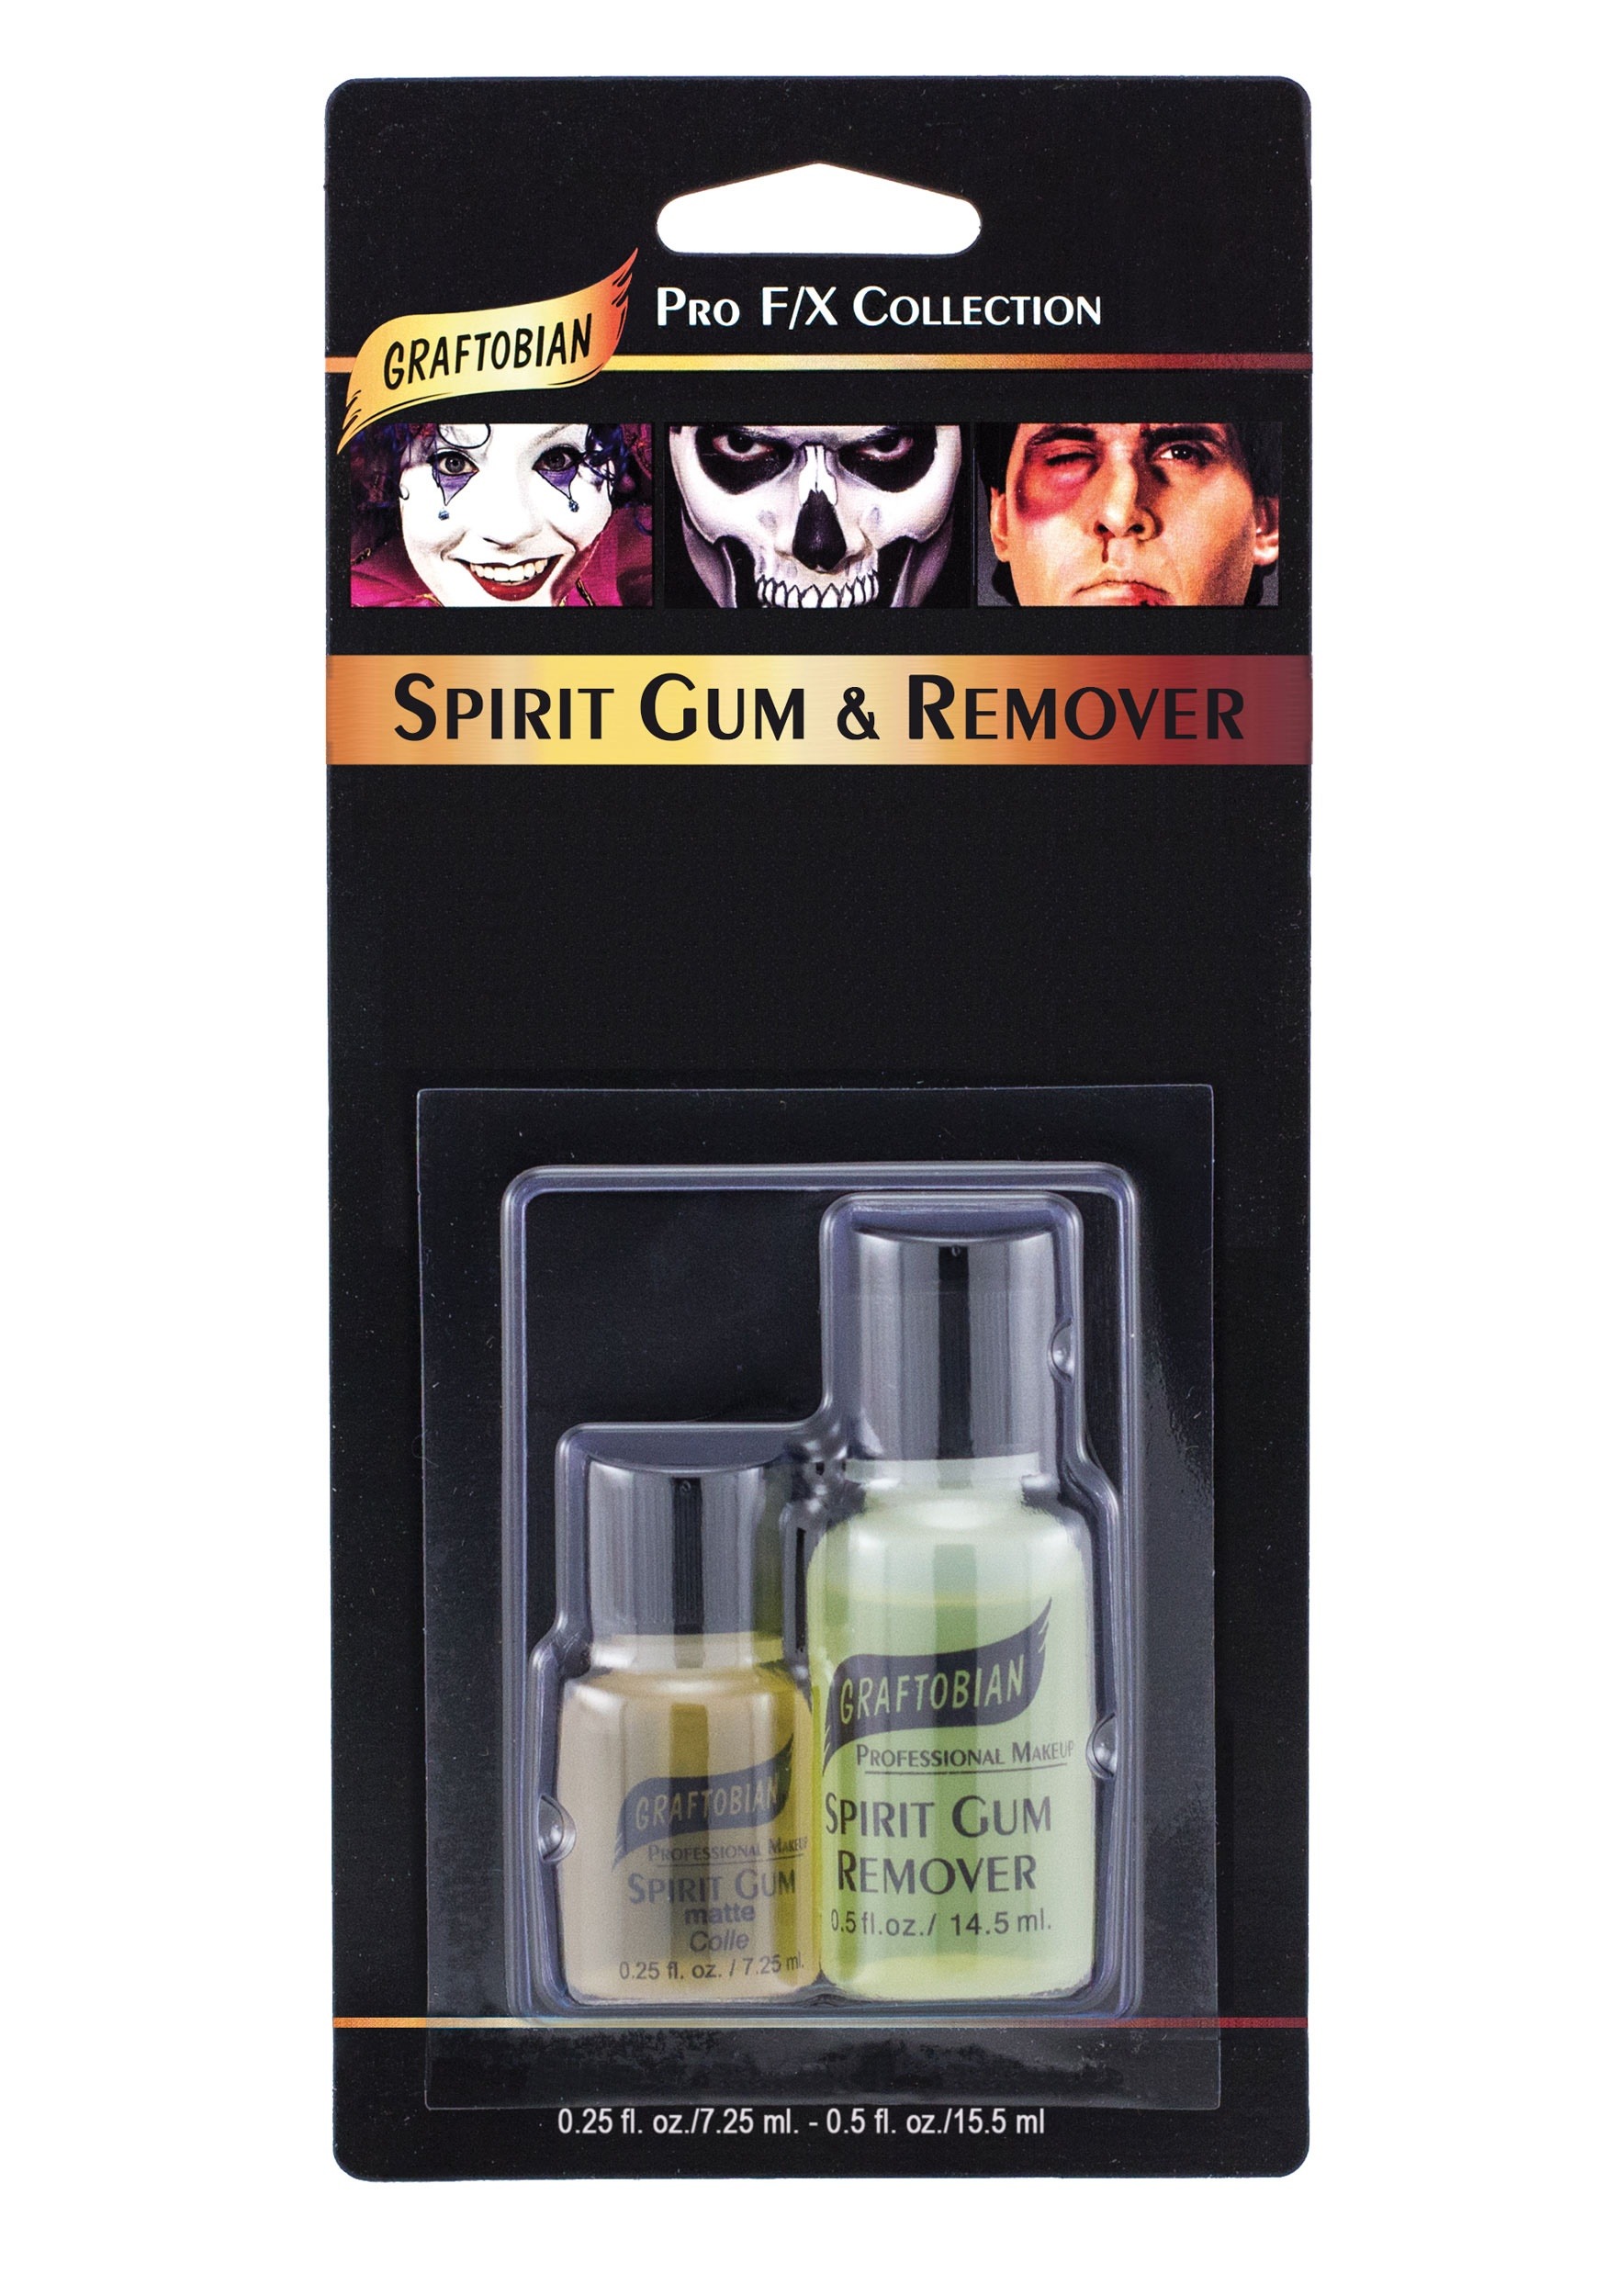 Graftobian Deluxe Spirit Gum & Remover